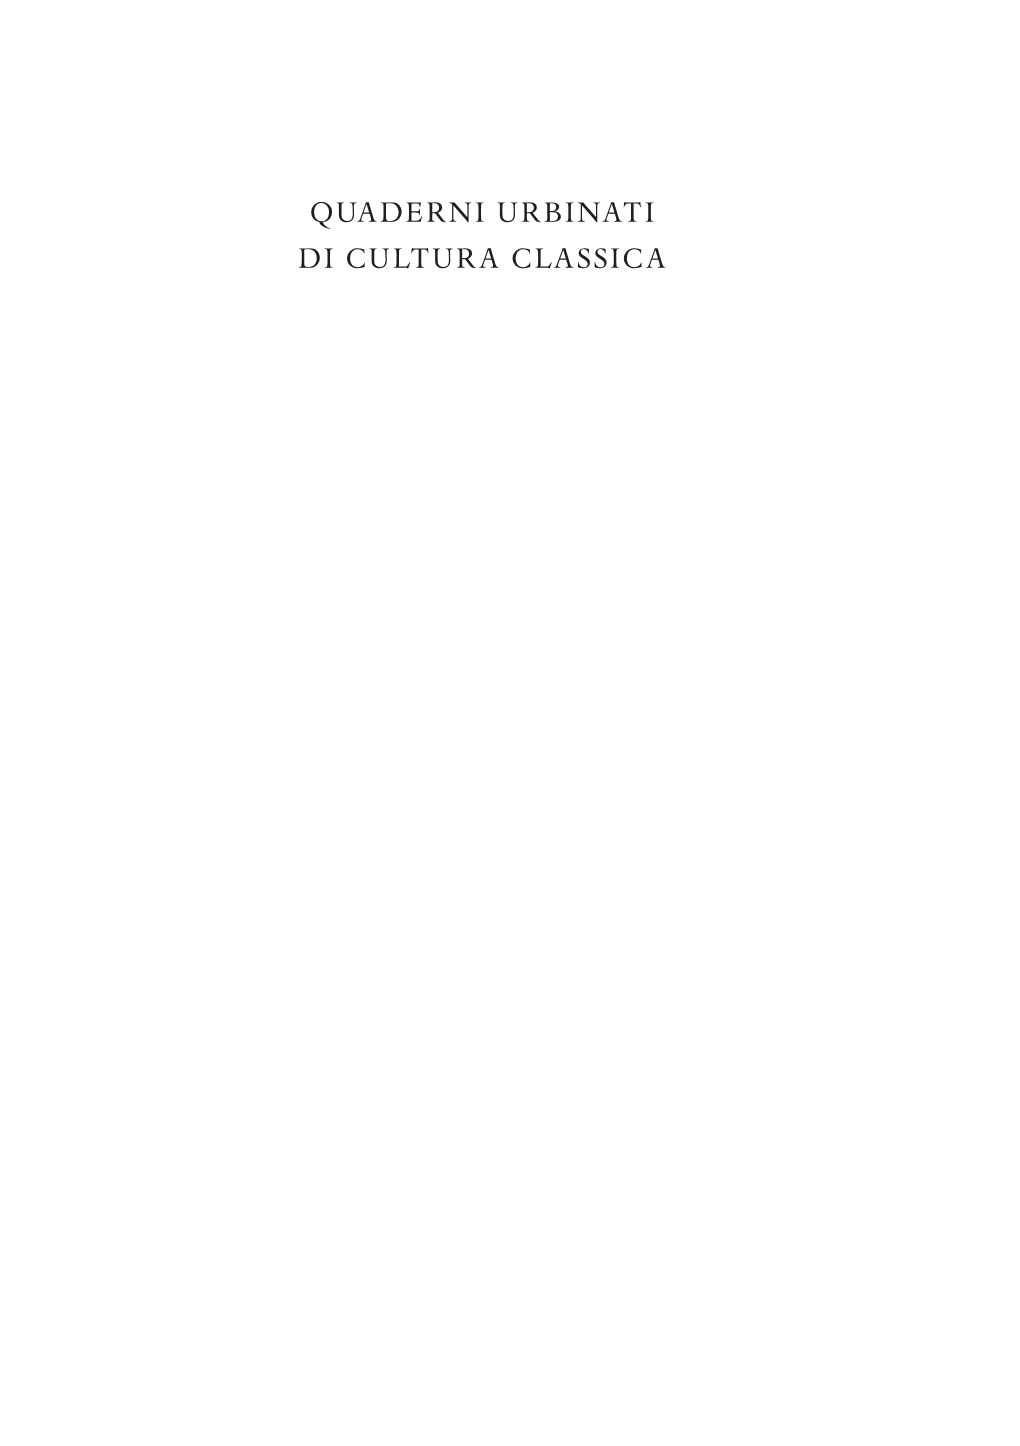 Quaderni Urbinati Di Cultura Classica Direttore: Carmine Catenacci